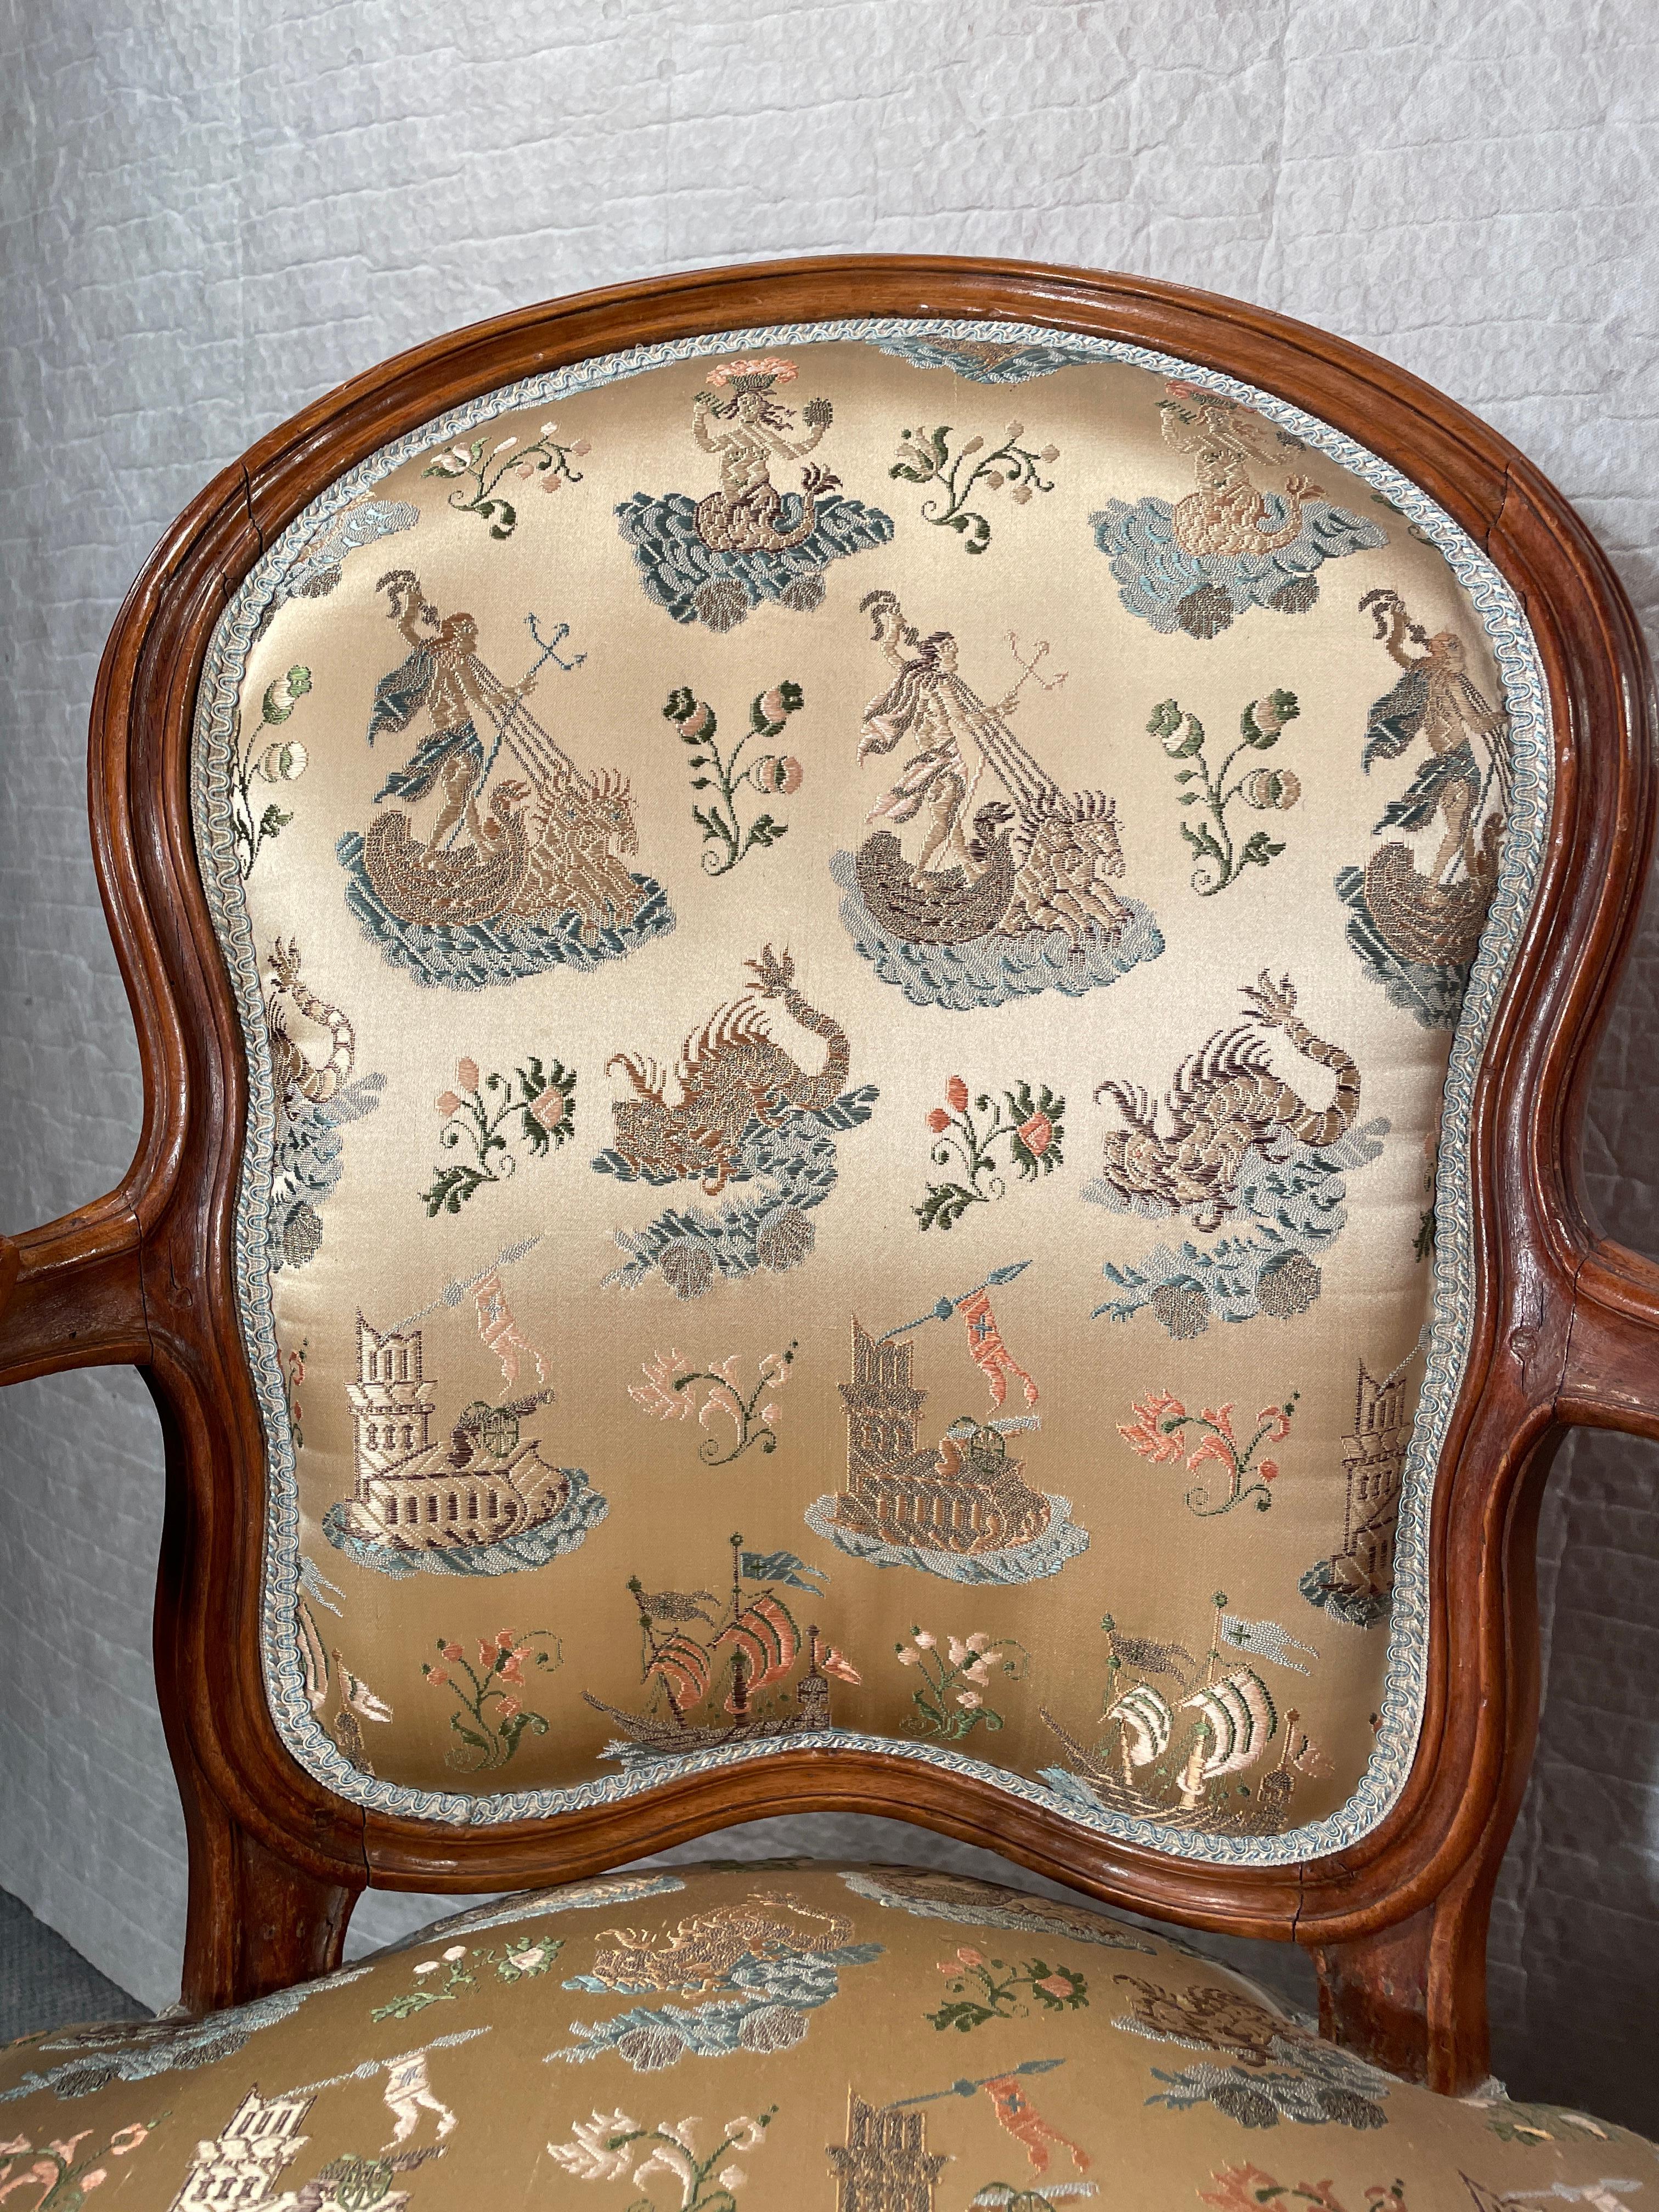 Entdecken Sie den zeitlosen Charme dieses exquisiten Louis XV-Sesselpaars, dessen anmutig geschwungene Nussbaumrahmen mit kunstvollen Schnitzereien verziert sind. Diese atemberaubenden Sessel sind in bemerkenswerter Weise in ihrem Originalzustand